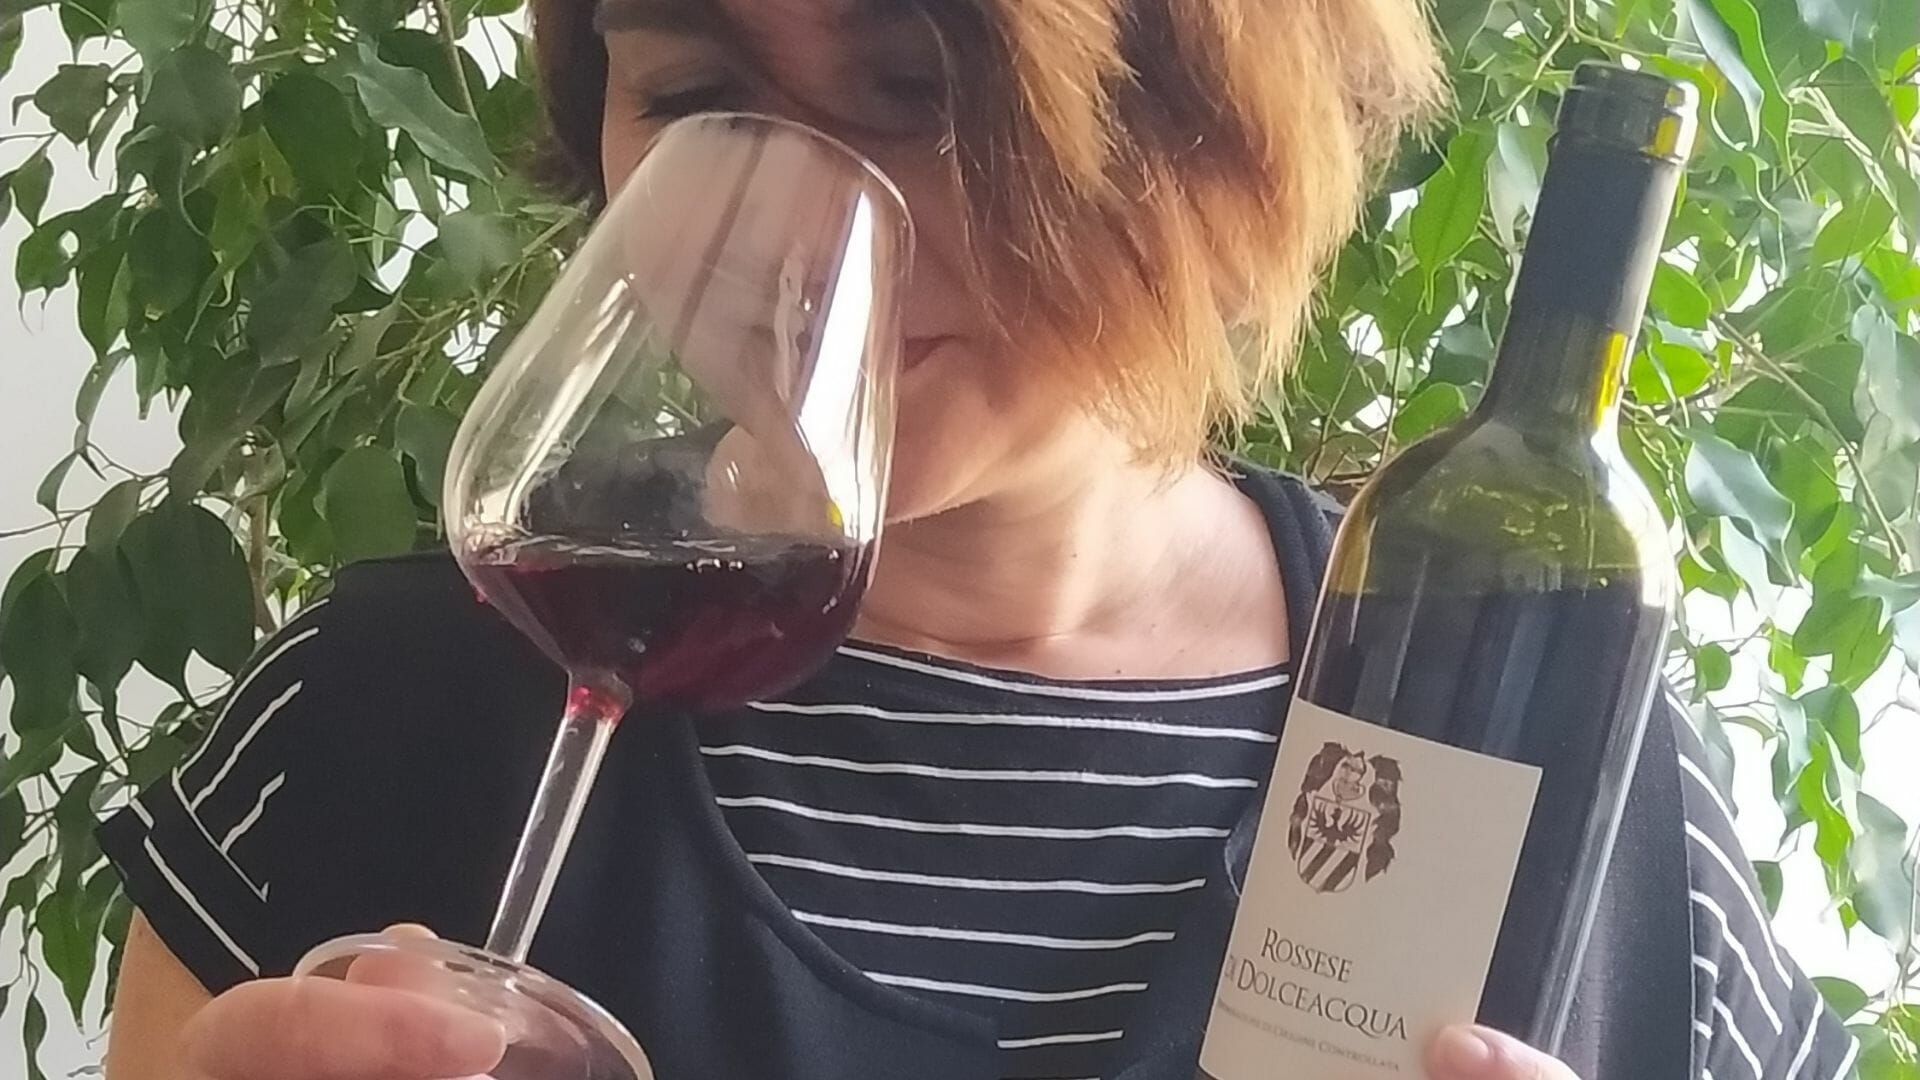 il rossese di dolceacqua - vino ligure - wine from liguria